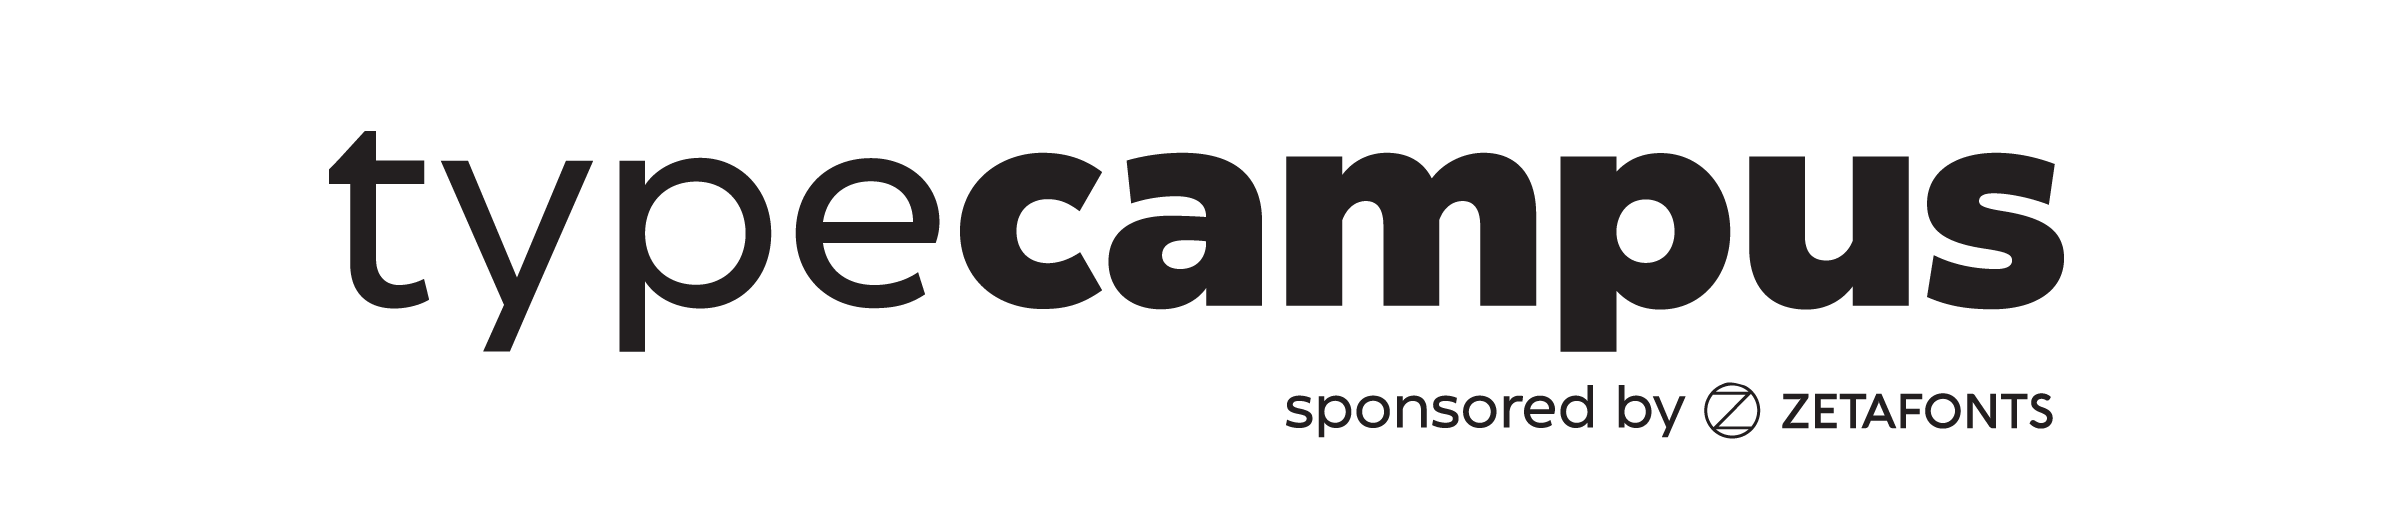 typecampus logo transparent